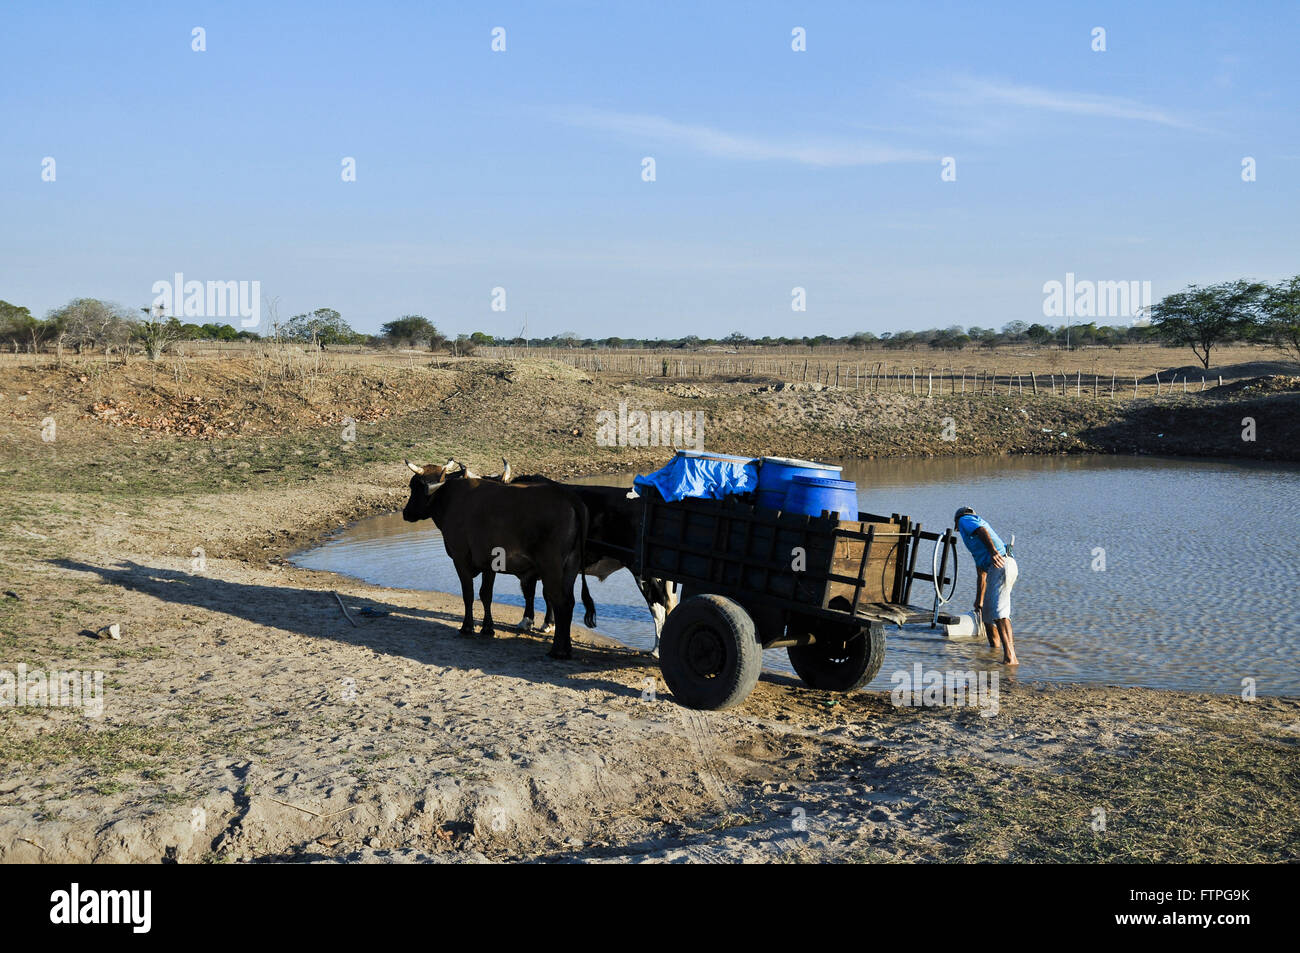 La collecte de l'eau agriculteurs weir dans la campagne - la région rugueuse Banque D'Images